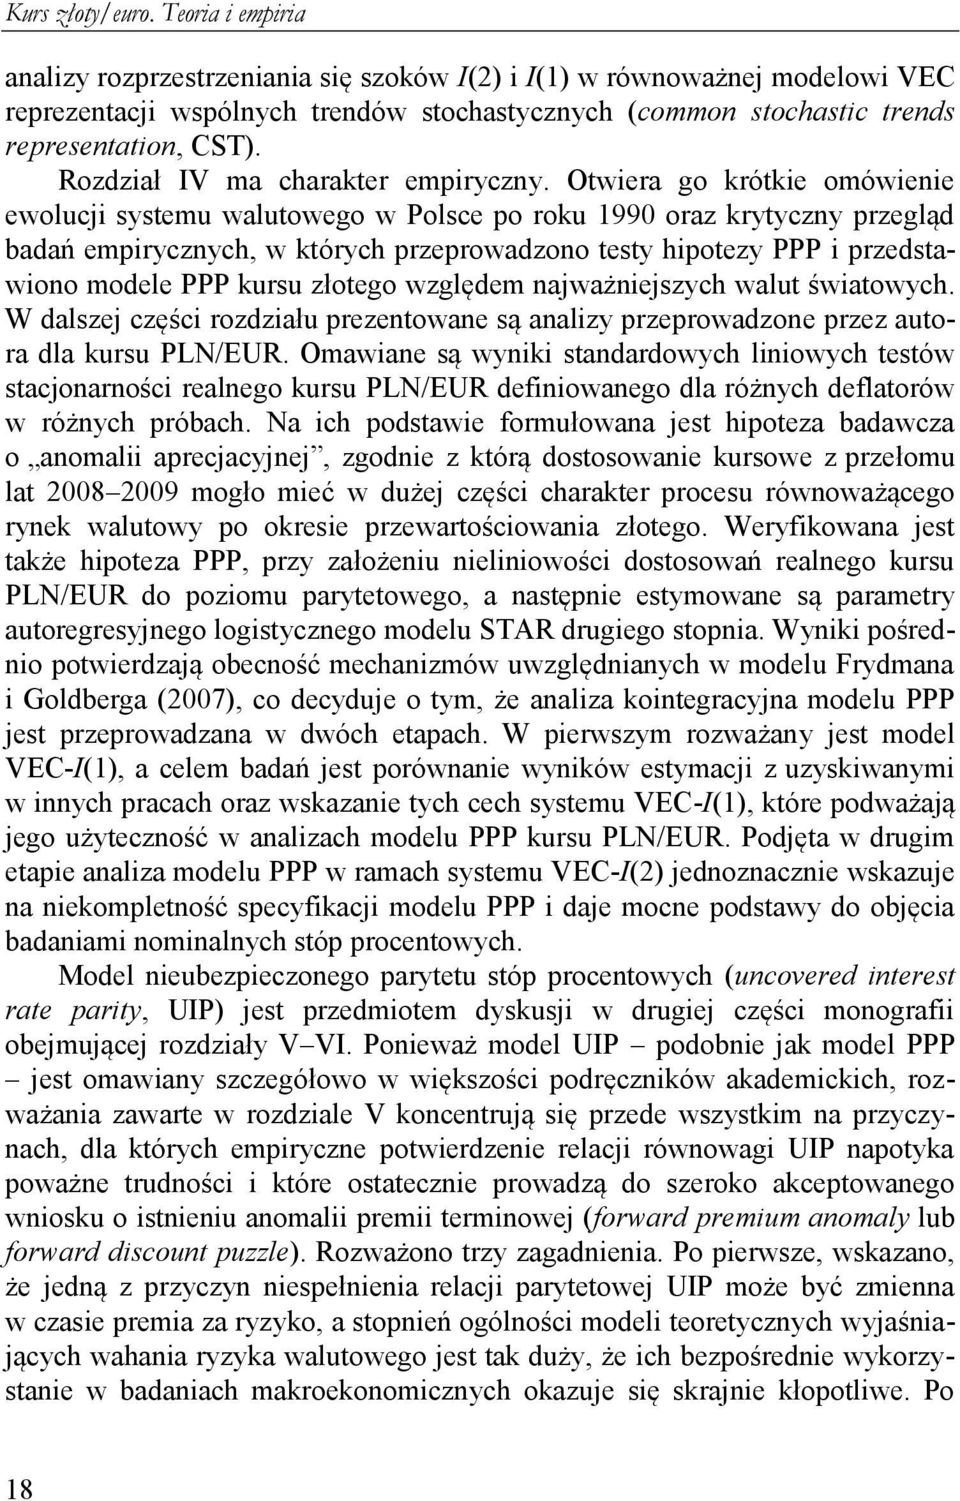 Owiera go krókie omówienie ewolucji sysemu waluowego w Polsce po roku 1990 oraz kryyczny przegląd badań empirycznych, w kórych przeprowadzono esy hipoezy PPP i przedsawiono modele PPP kursu złoego